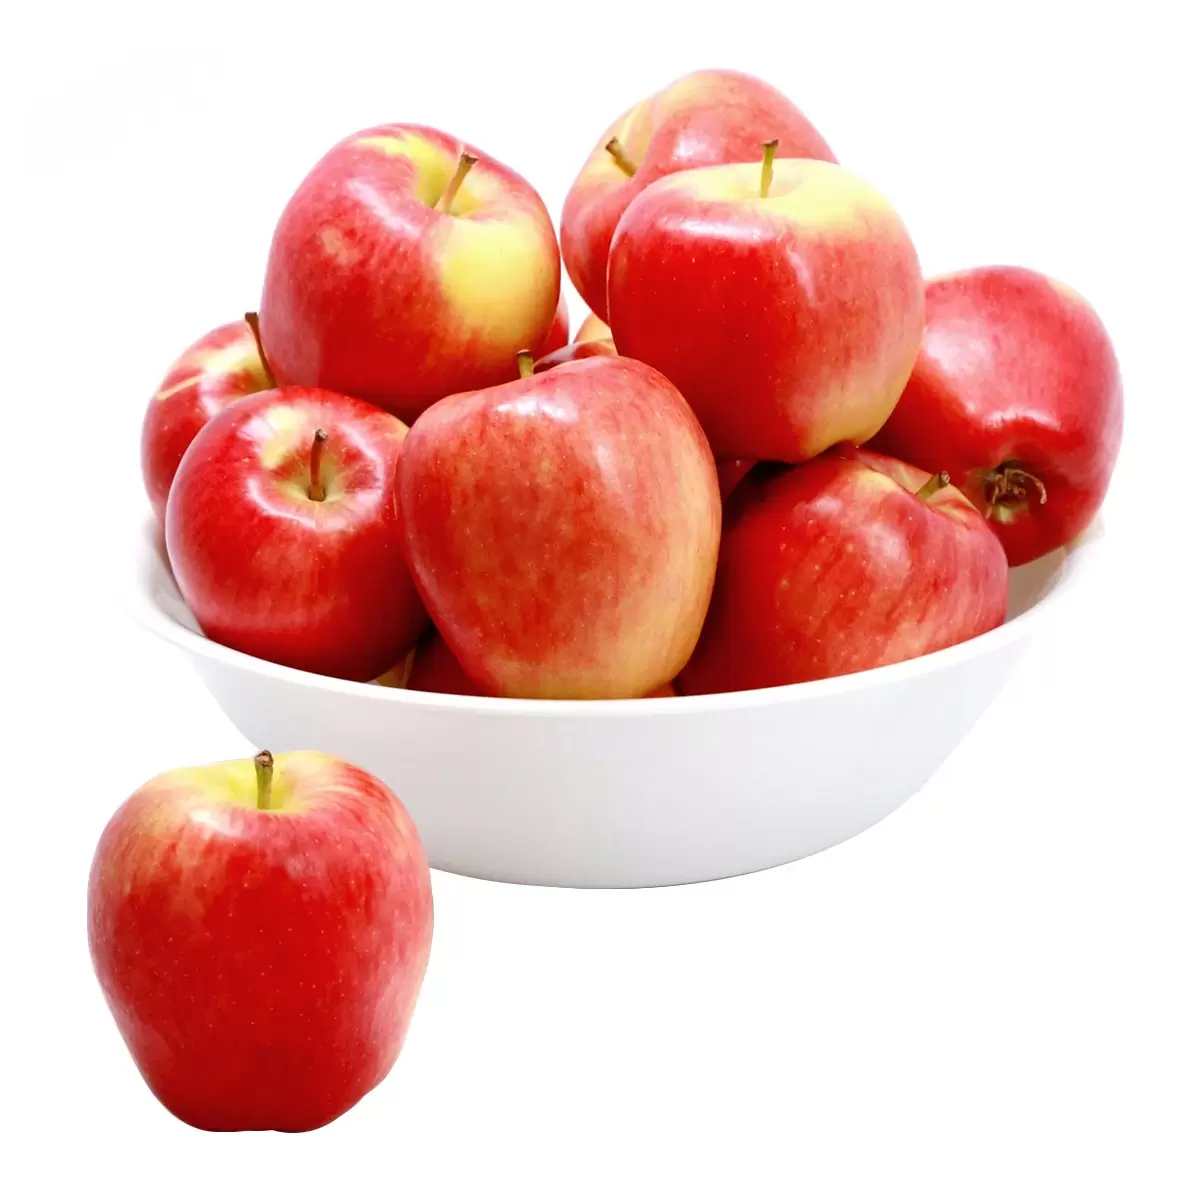 美國珍蜜蘋果 2.4公斤